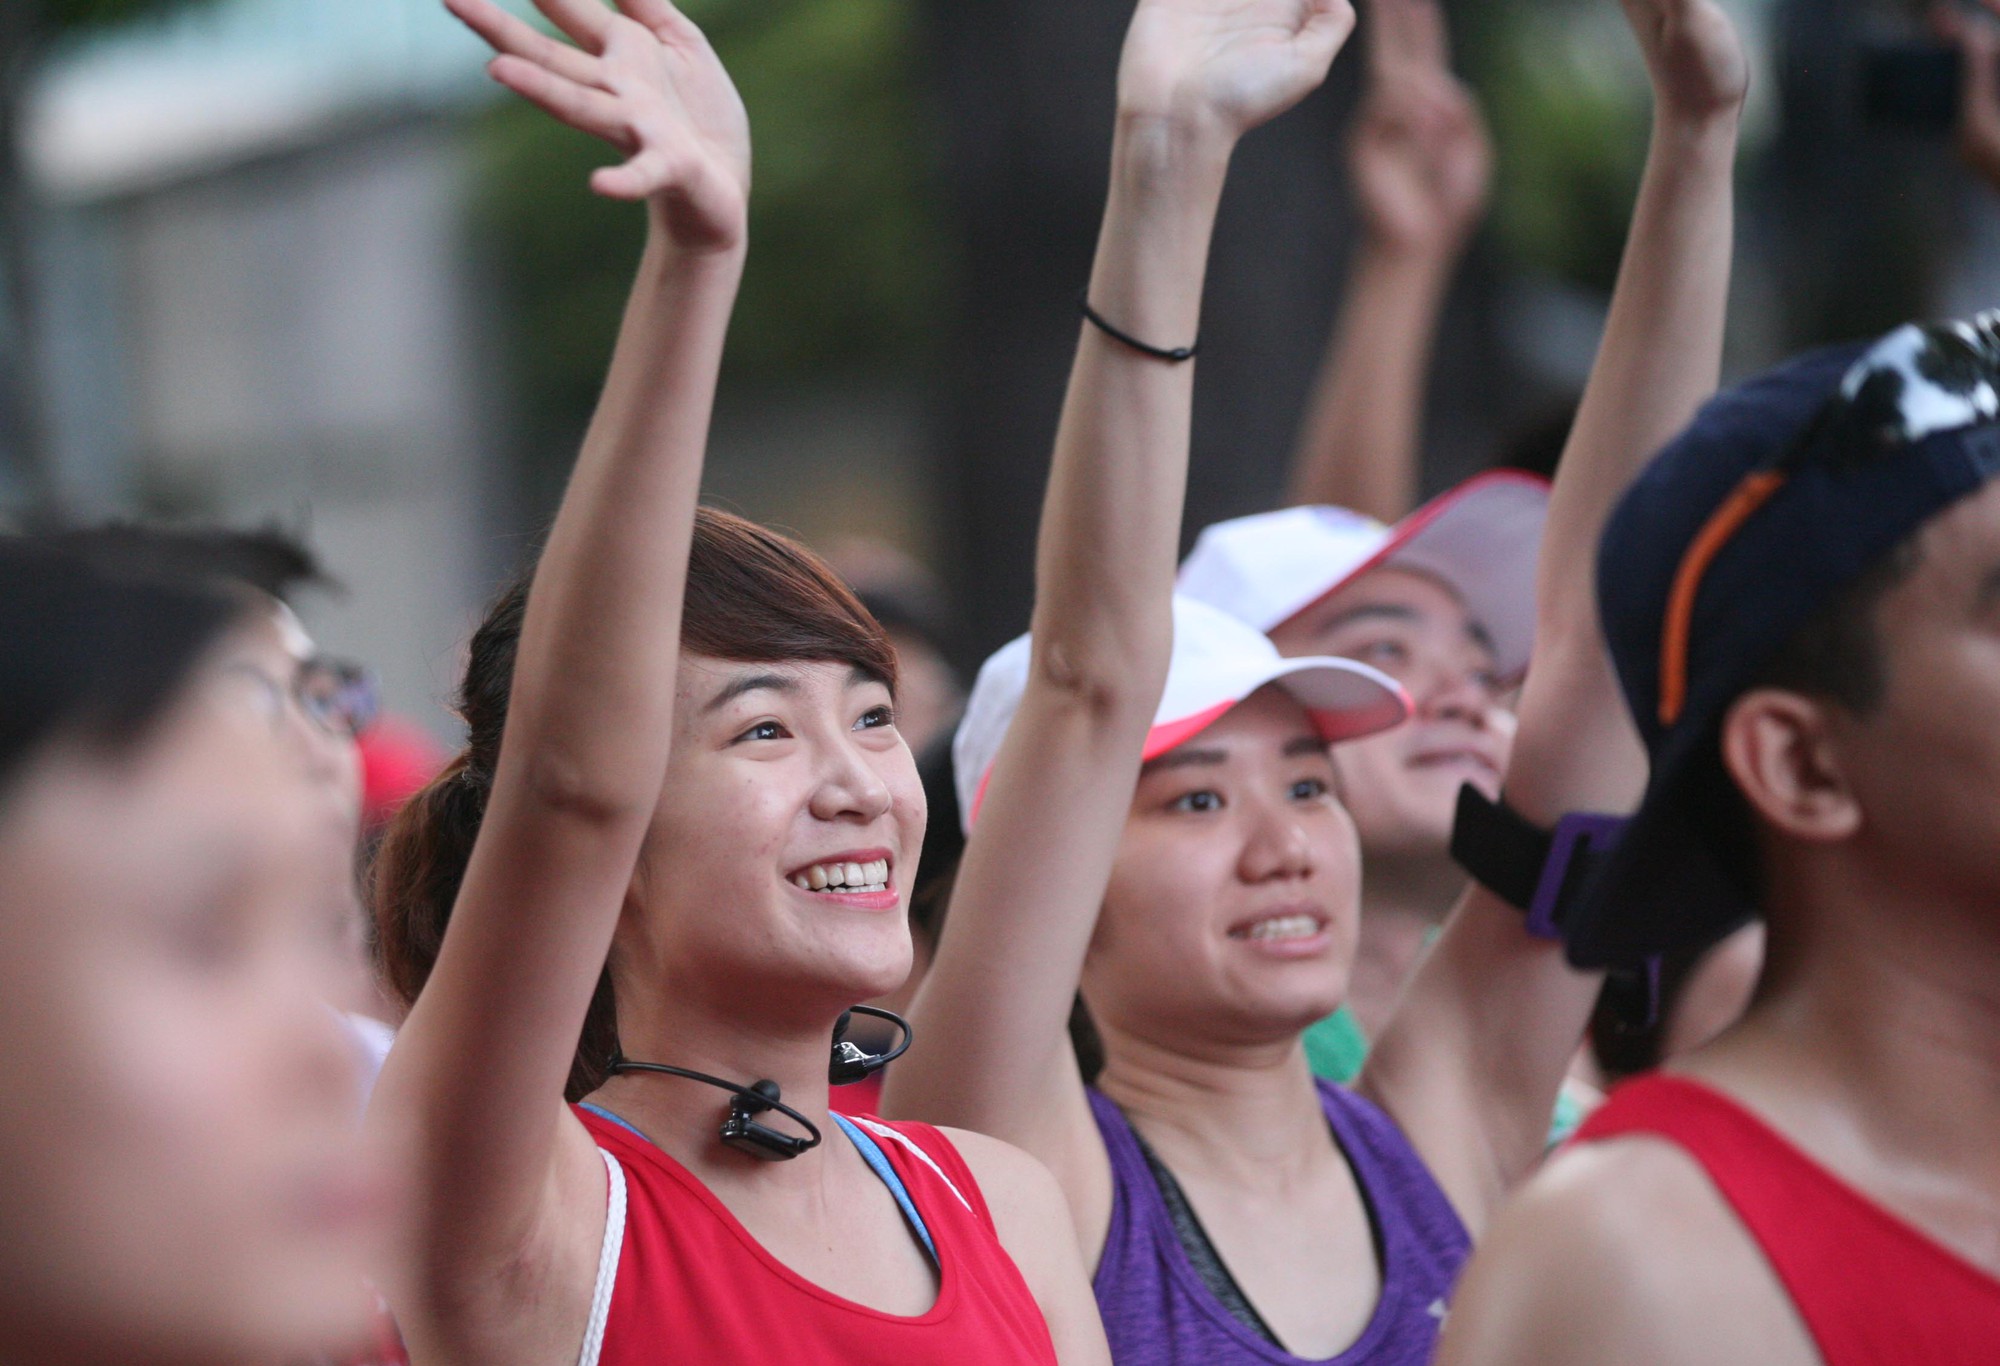 Hãy tới đóng góp chính mình trong cuộc thi chạy lớn nhất Việt Nam thông qua hình ảnh đầy hứa hẹn này.